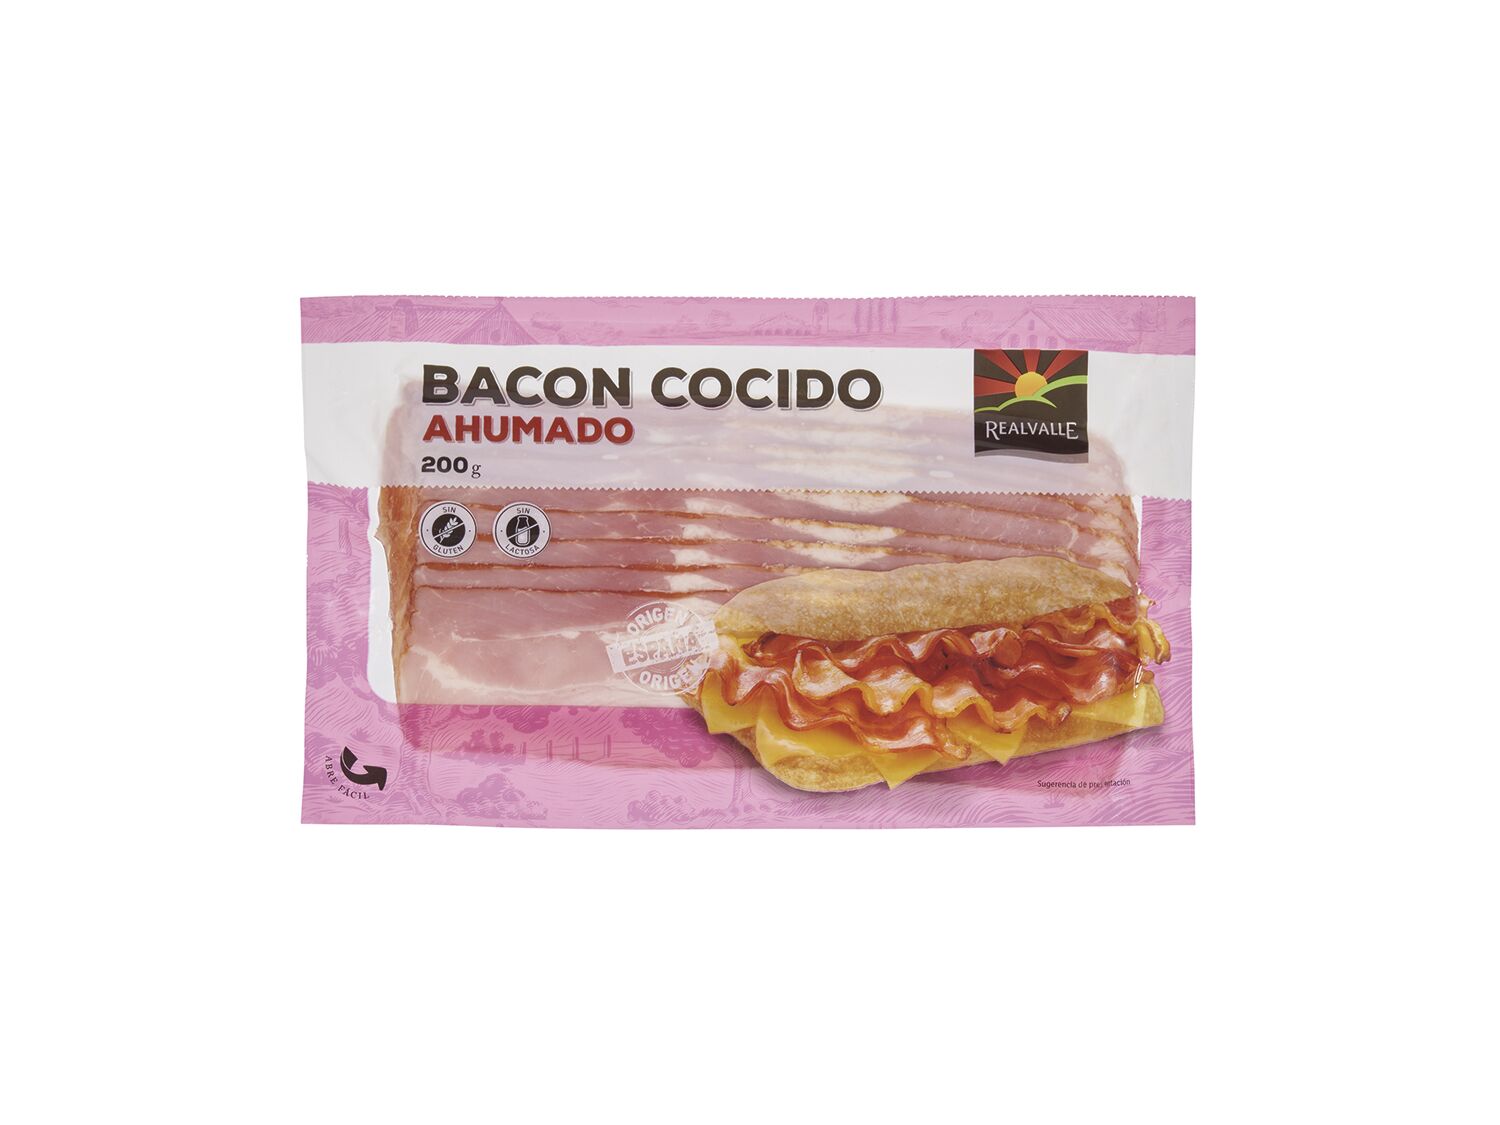 Bacon cocido ahumado